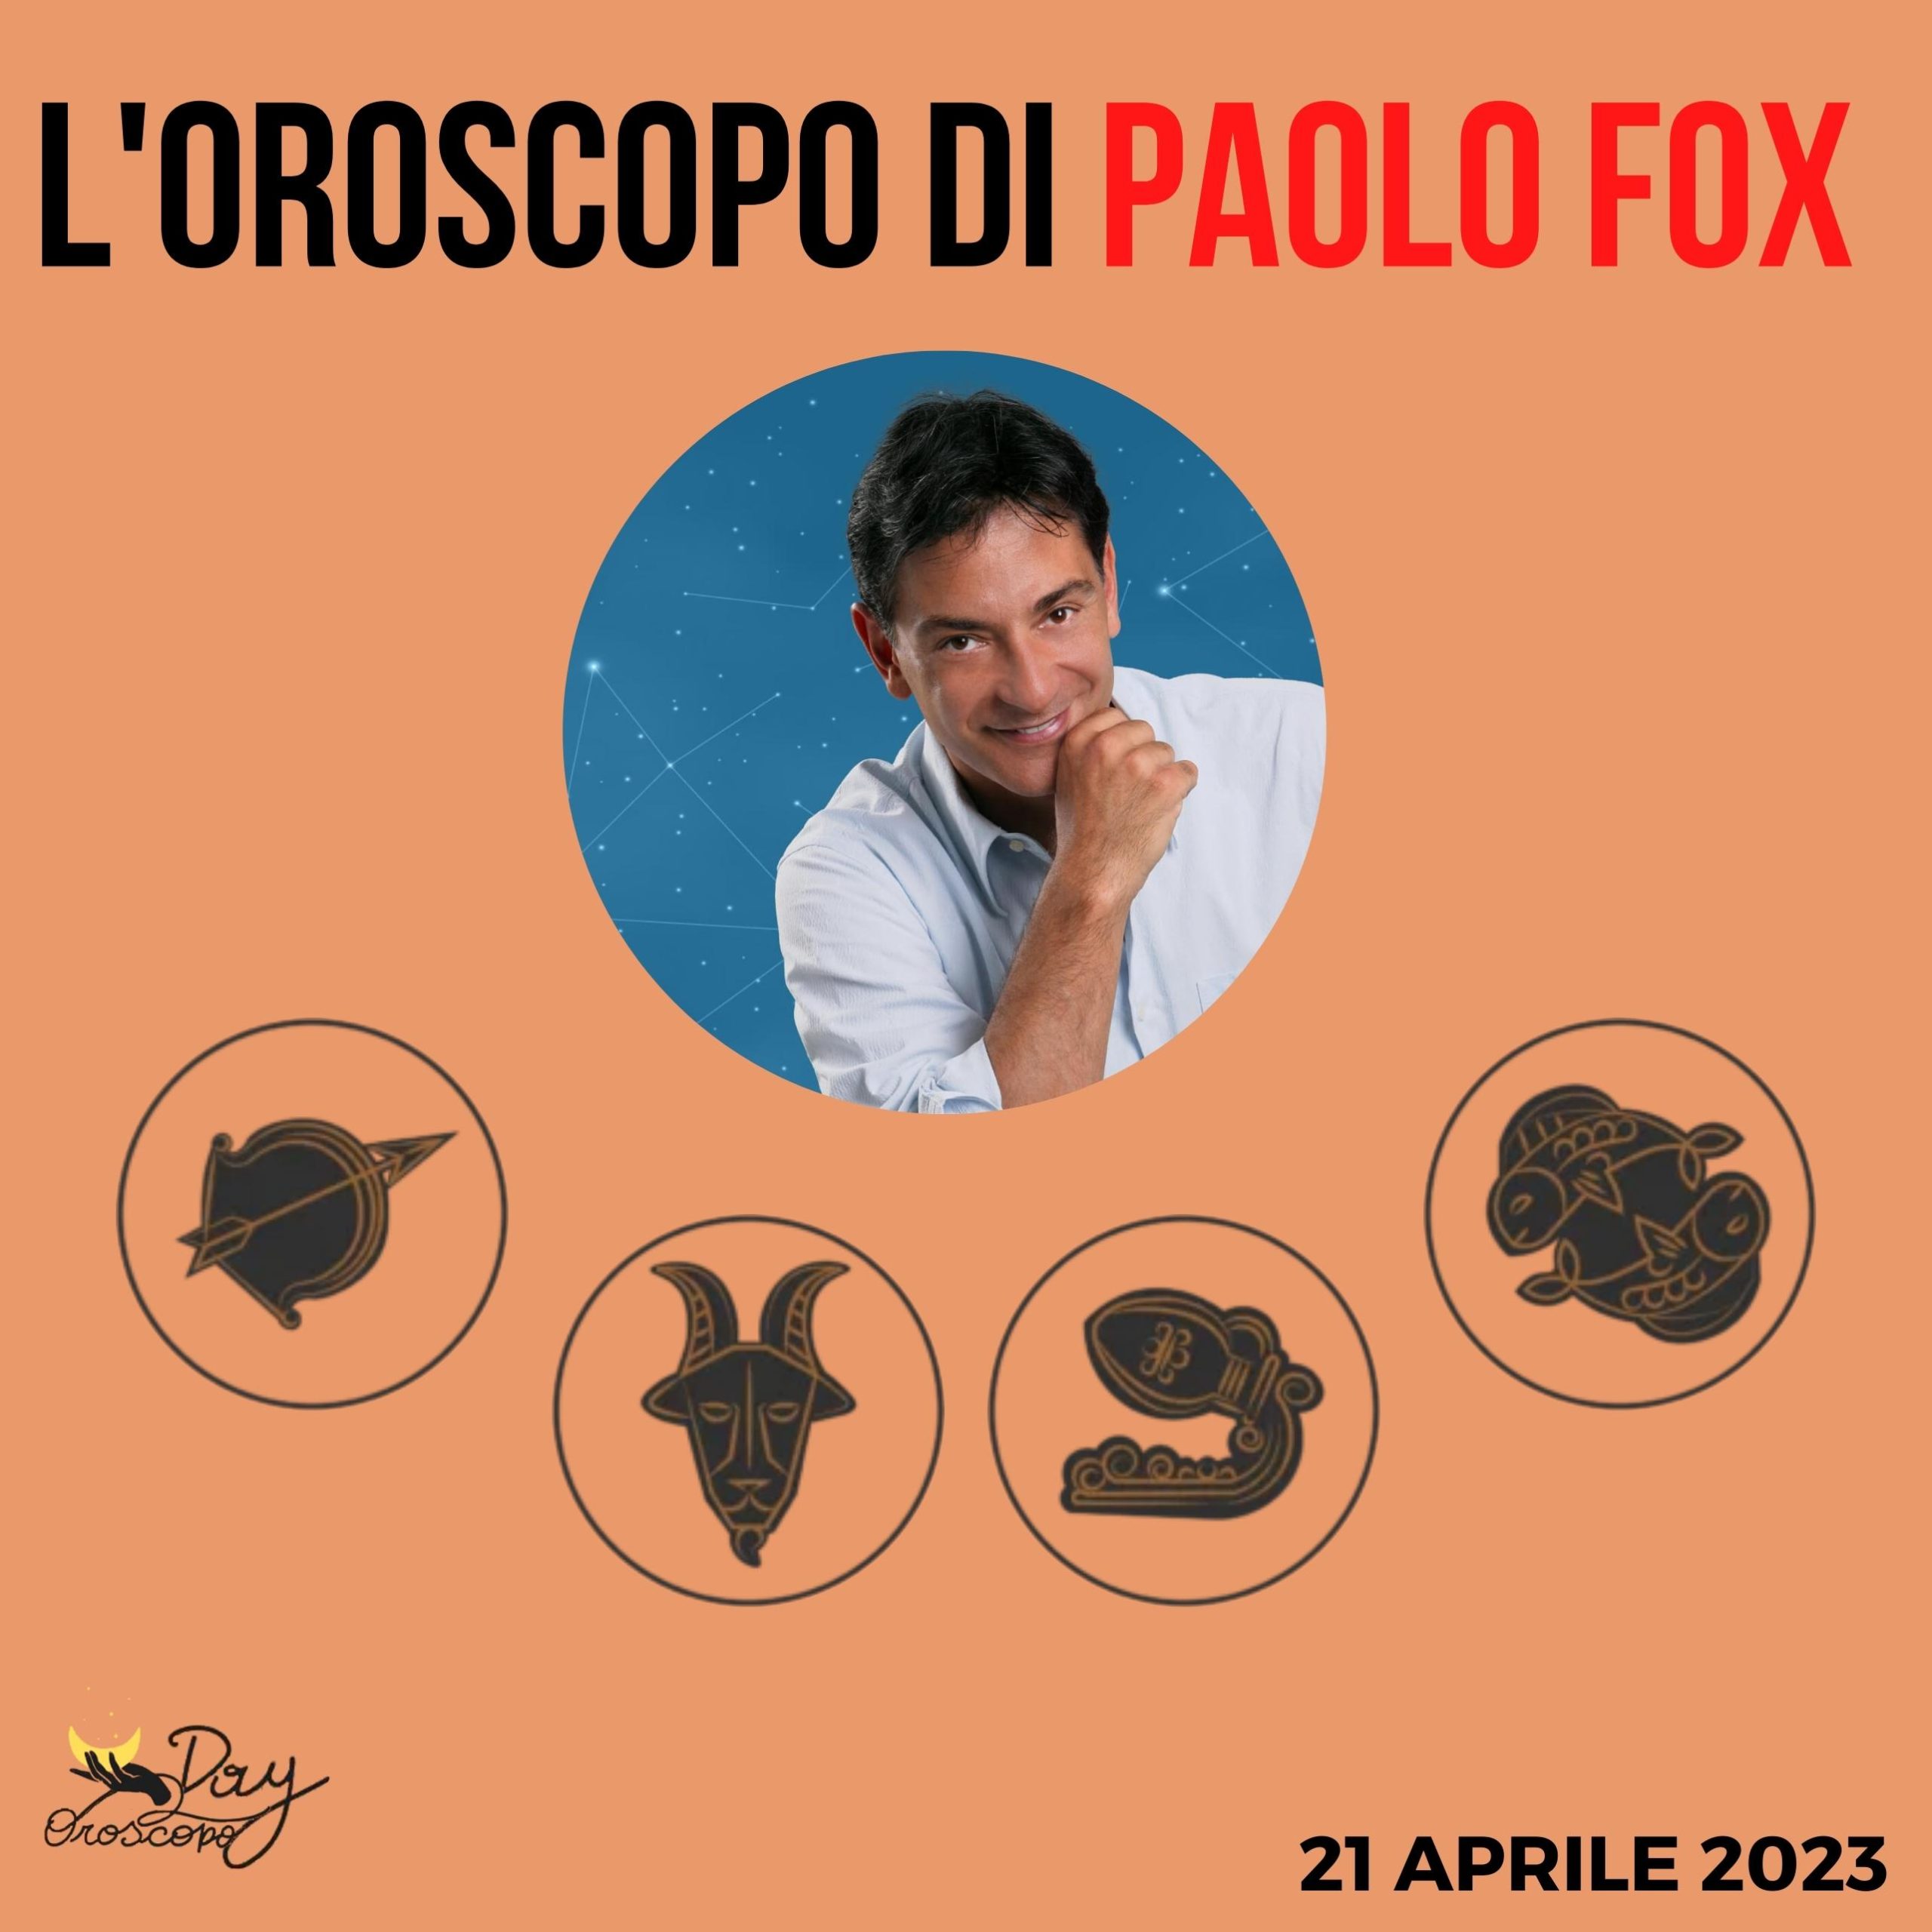 Oroscopo oggi domani Paolo Fox 21 aprile Sagittario Capricorno Acquario Pesci